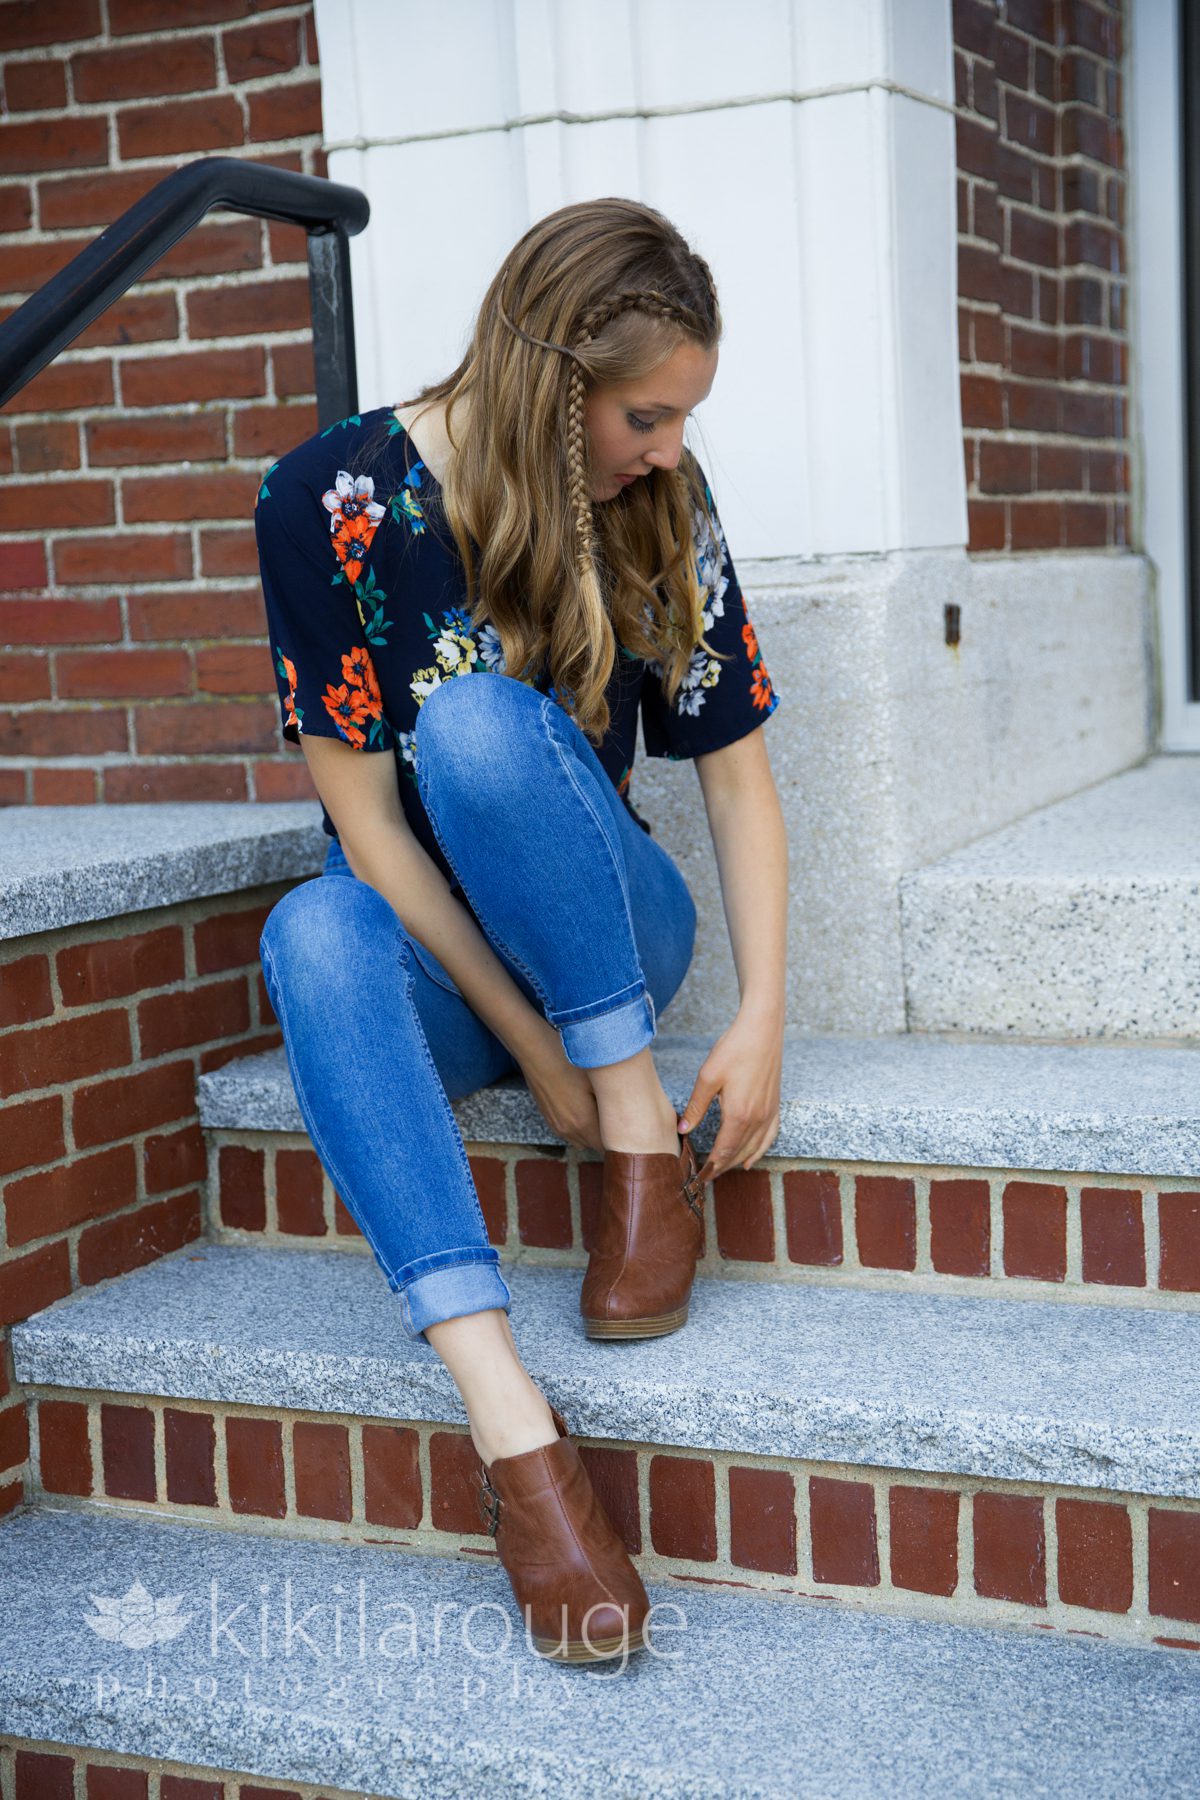 Girl sitting on brick steps adjusting shoes